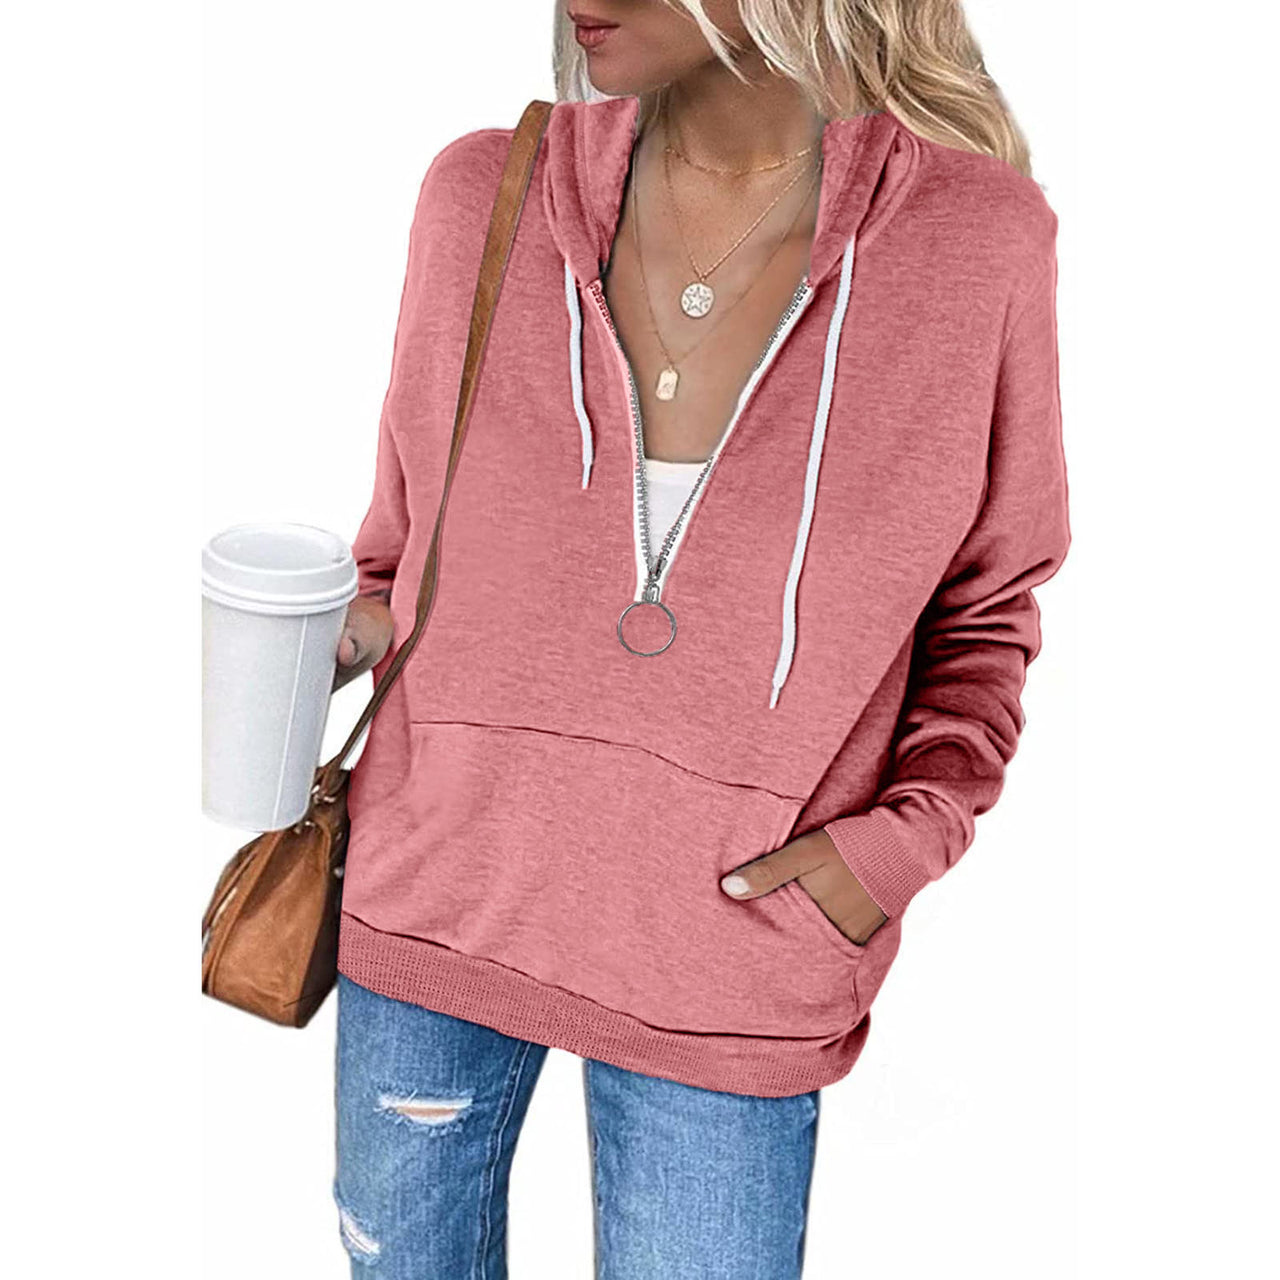 Ladies Solid Color Long Sleeve Hooded String Sweatshirt Zip Jacket